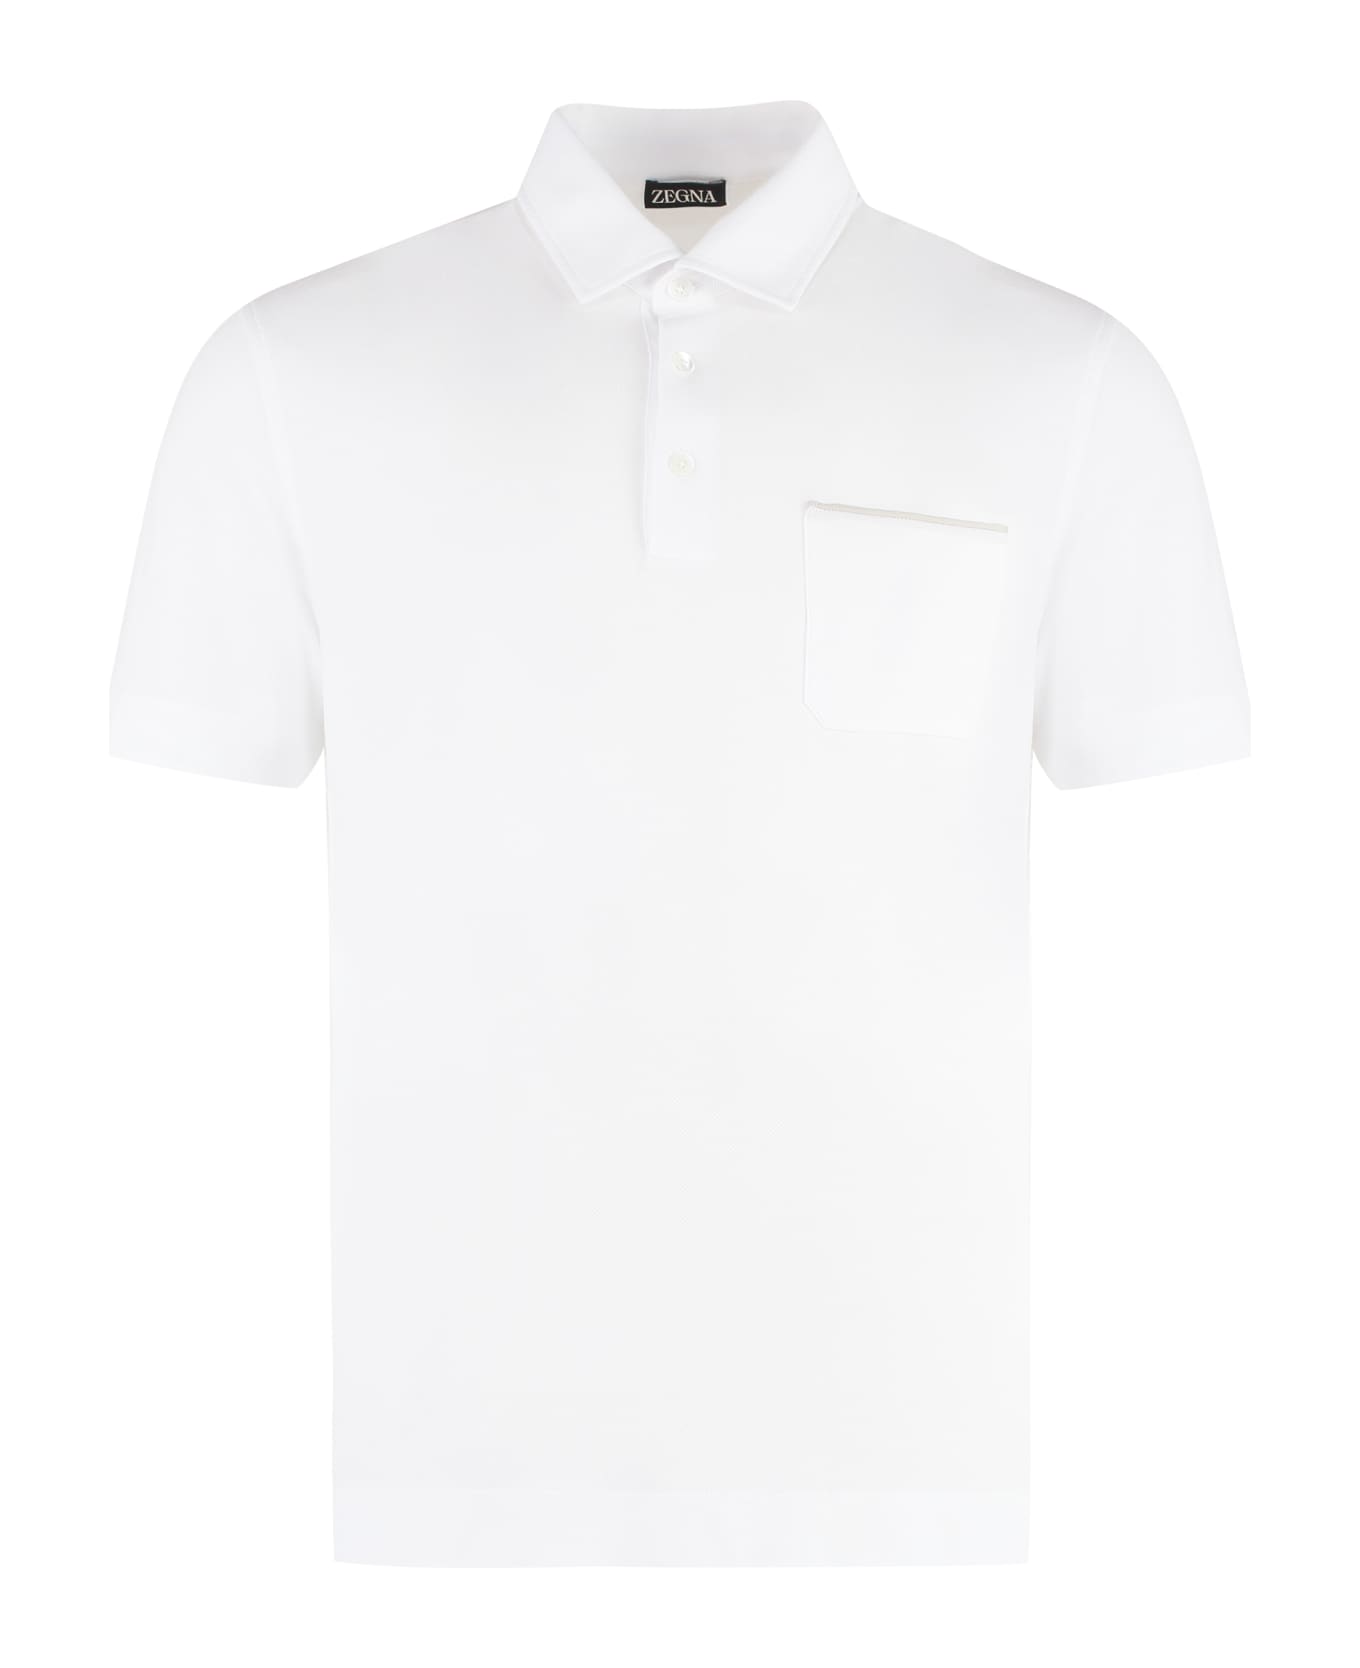 Zegna Short Sleeve Cotton Pique Polo Shirt - White